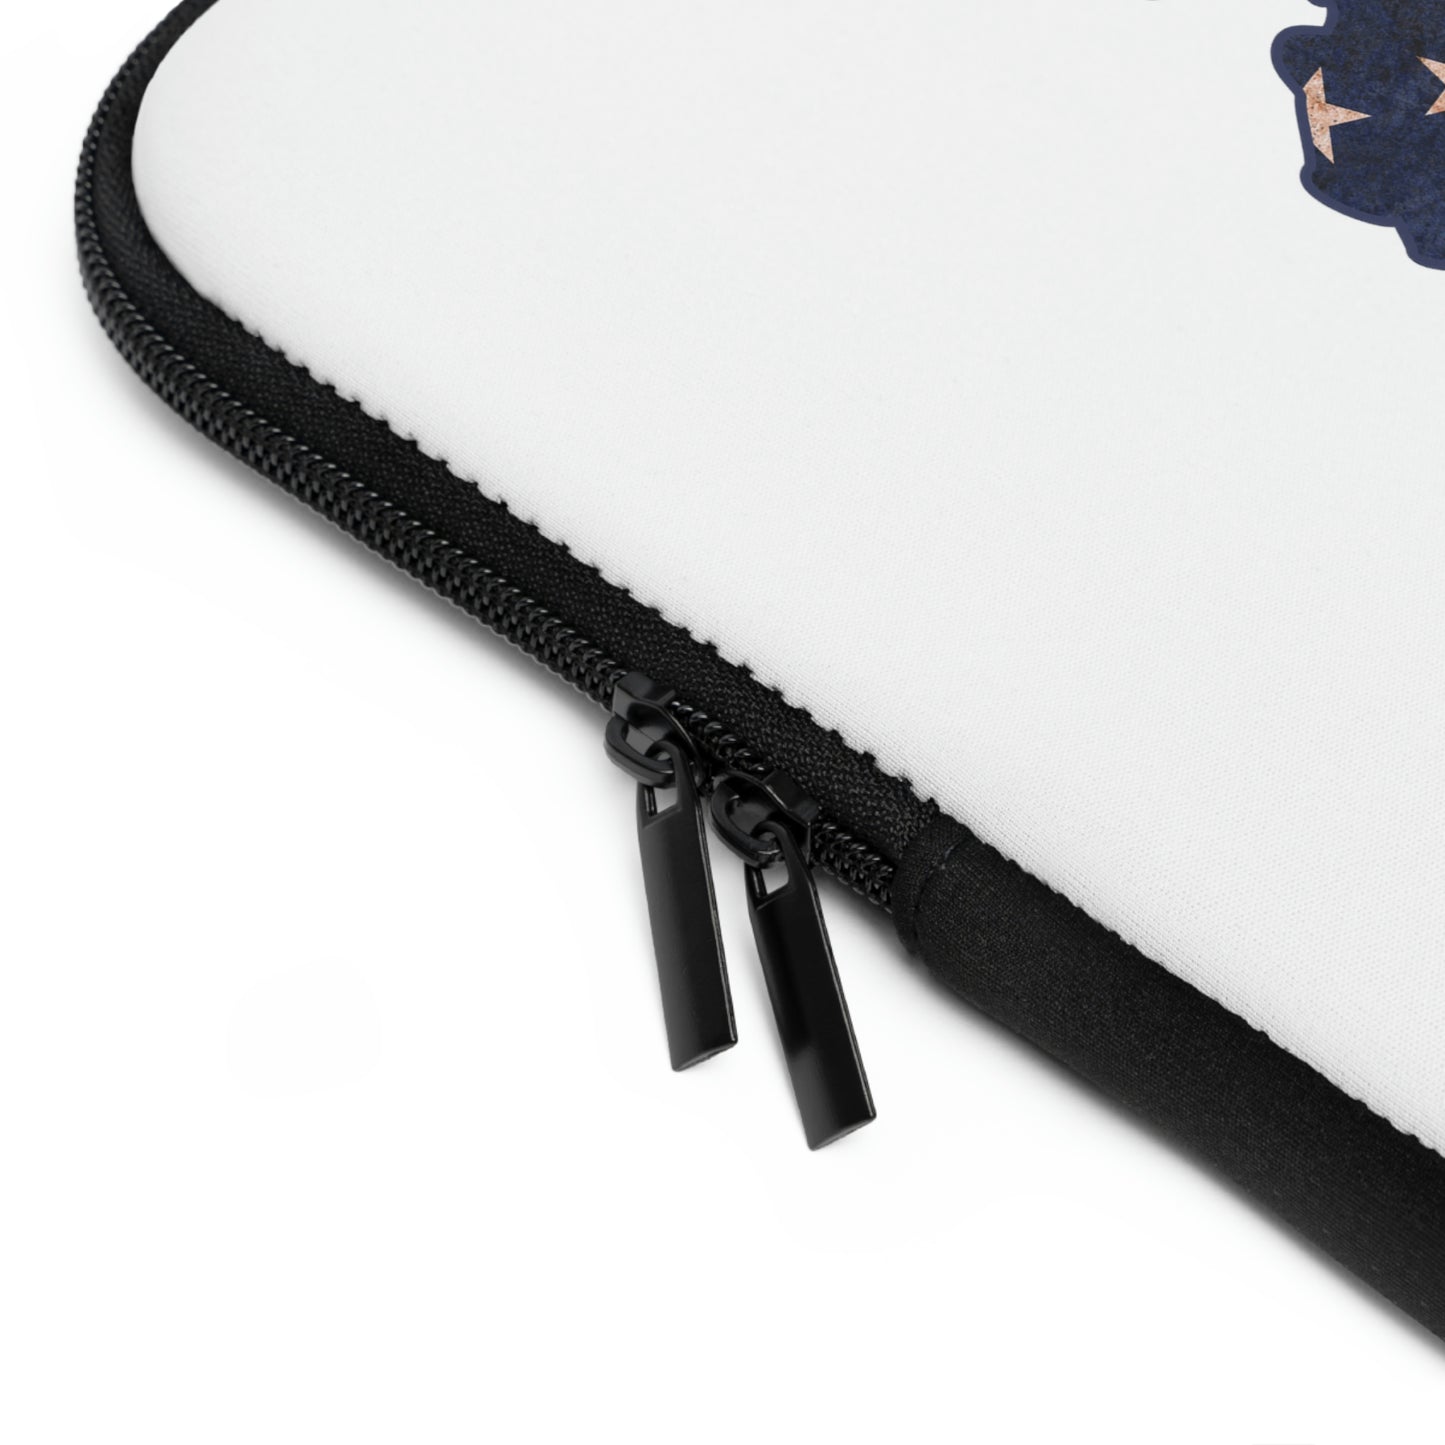 Alaska US Flag Print Laptop Sleeve